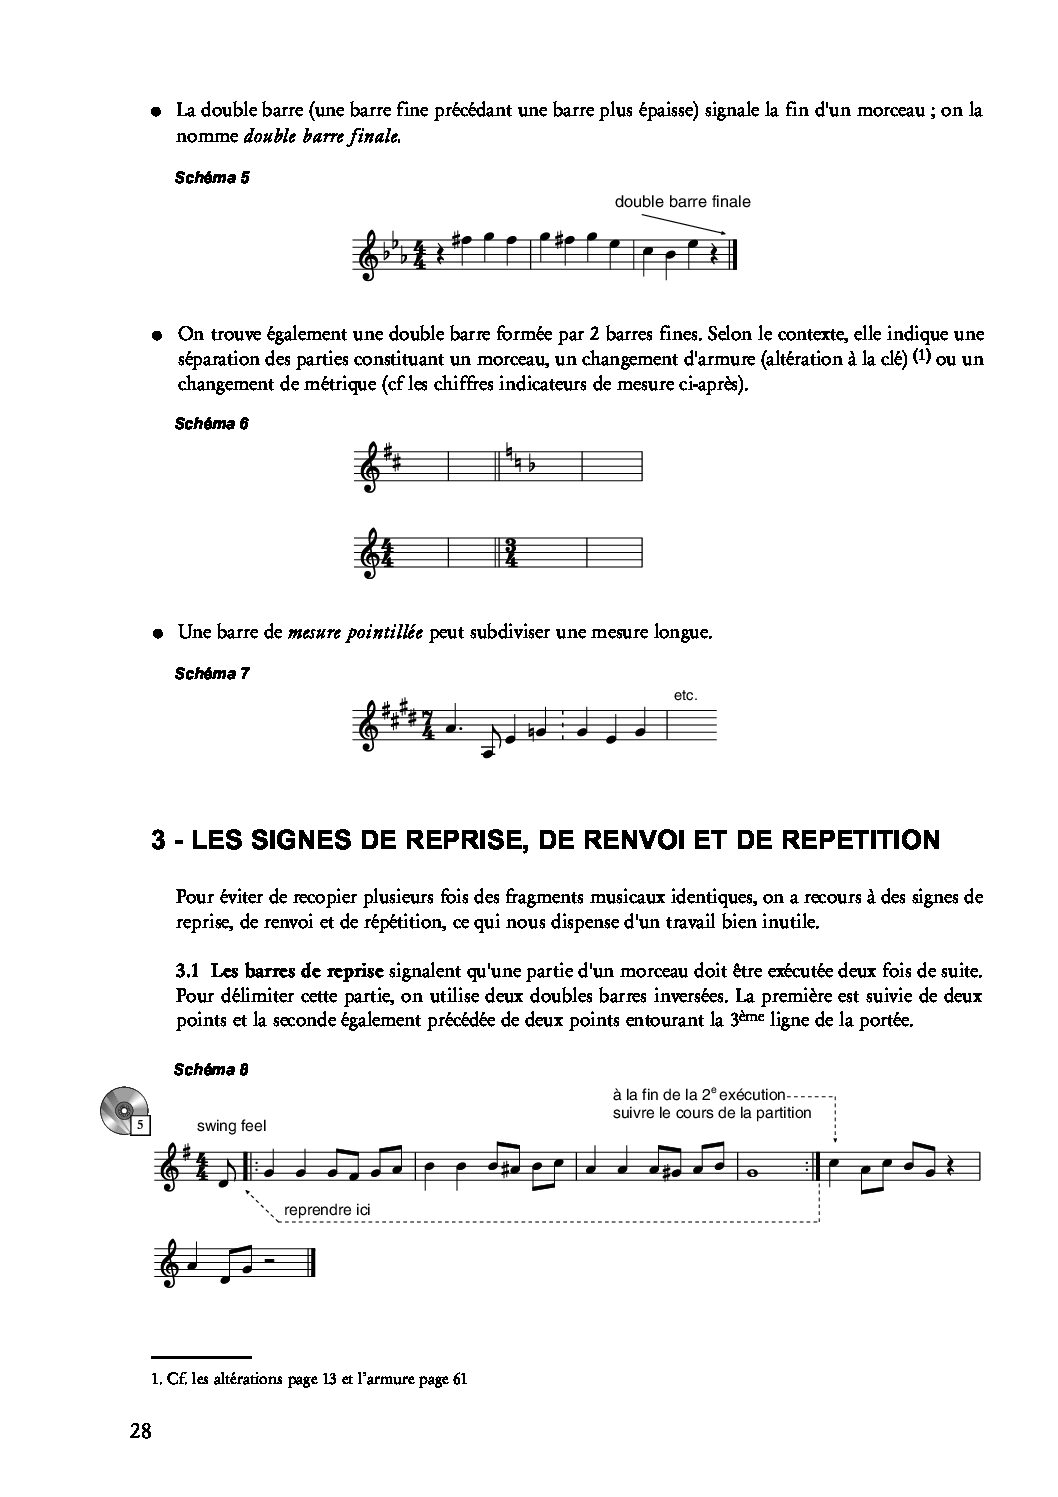 Solfège - Théorie de la Musique - Formation musicale